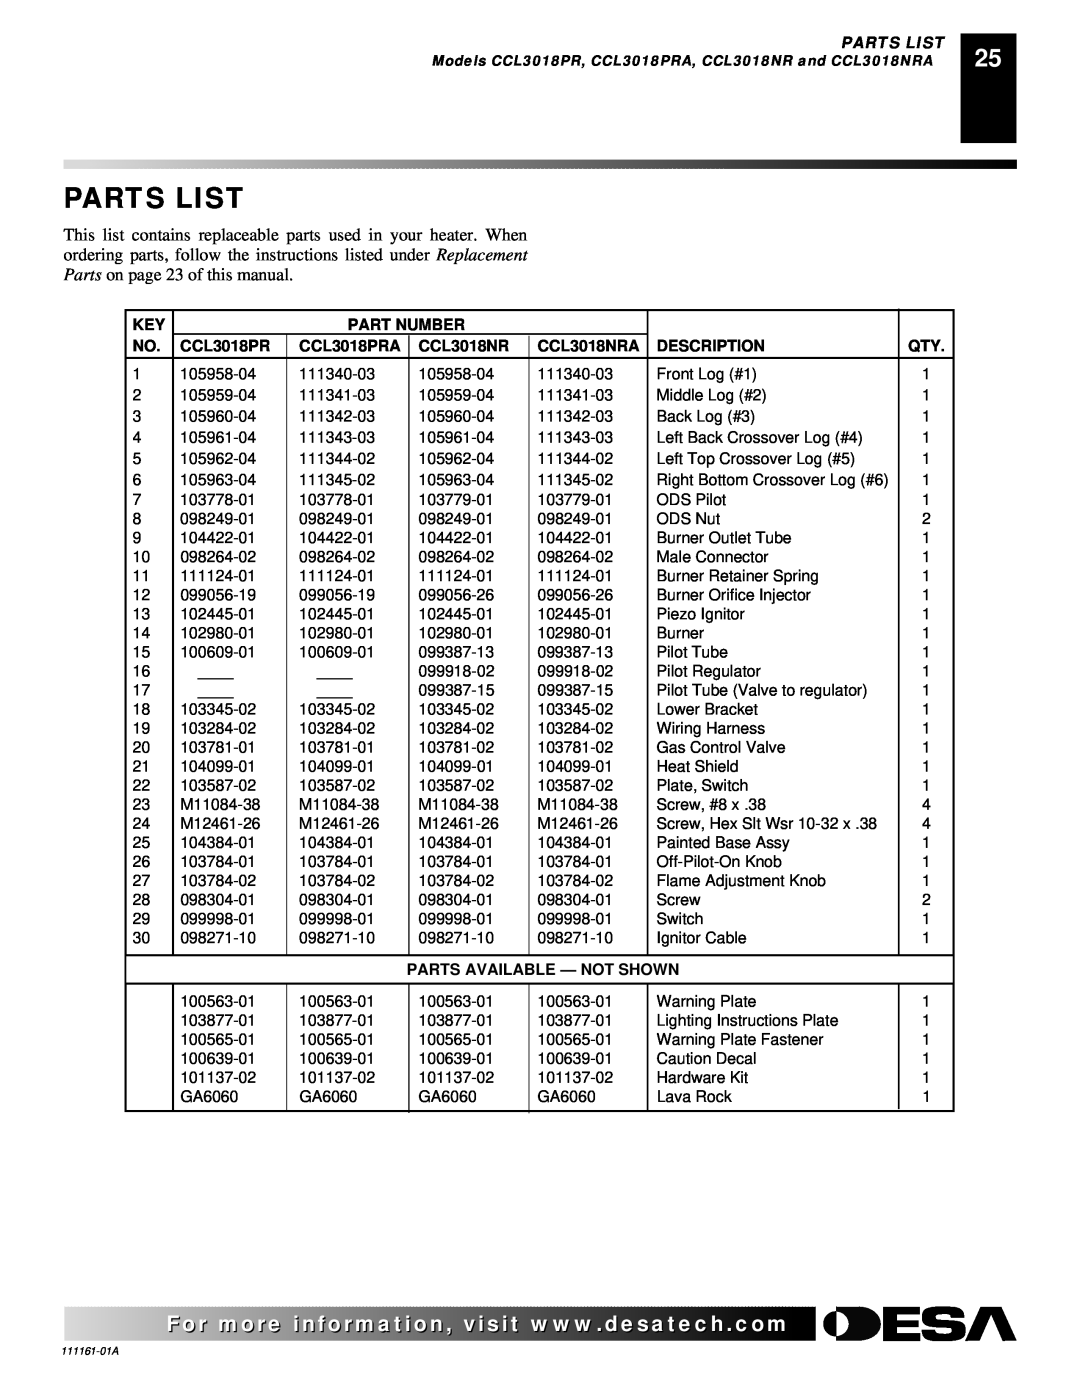 Desa CCL3924PR Parts List, Part Number, CCL3018PRA, CCL3018NRA, Description, Parts Available - Not Shown 